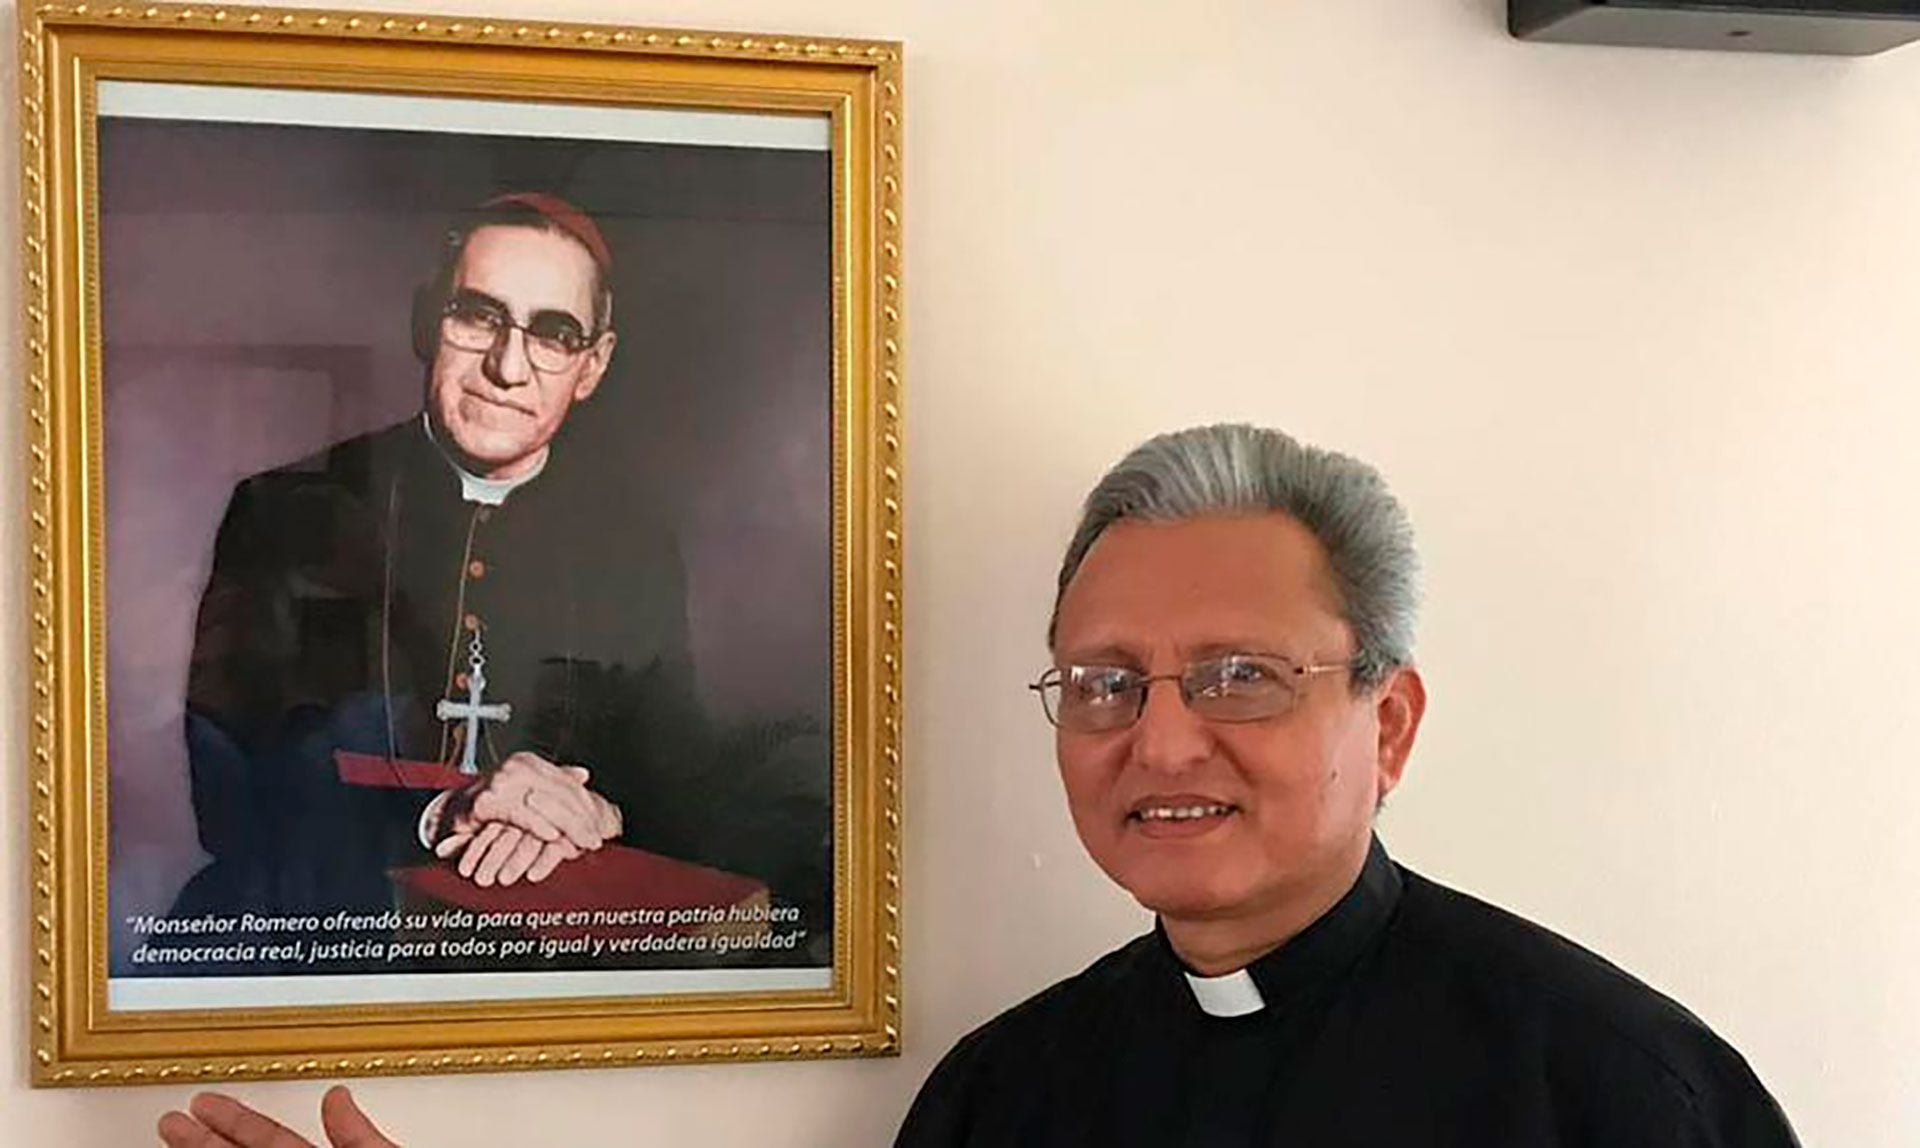 El sacerdote jesuita José Alberto Idiáquez, participó como rector de la UCA en los diálogos con el gobierno convocados por la iglesia católica en 2018 y 2019. Luego, el régimen de Ortega le negó el ingreso al país. (Foto cortesía UCA)